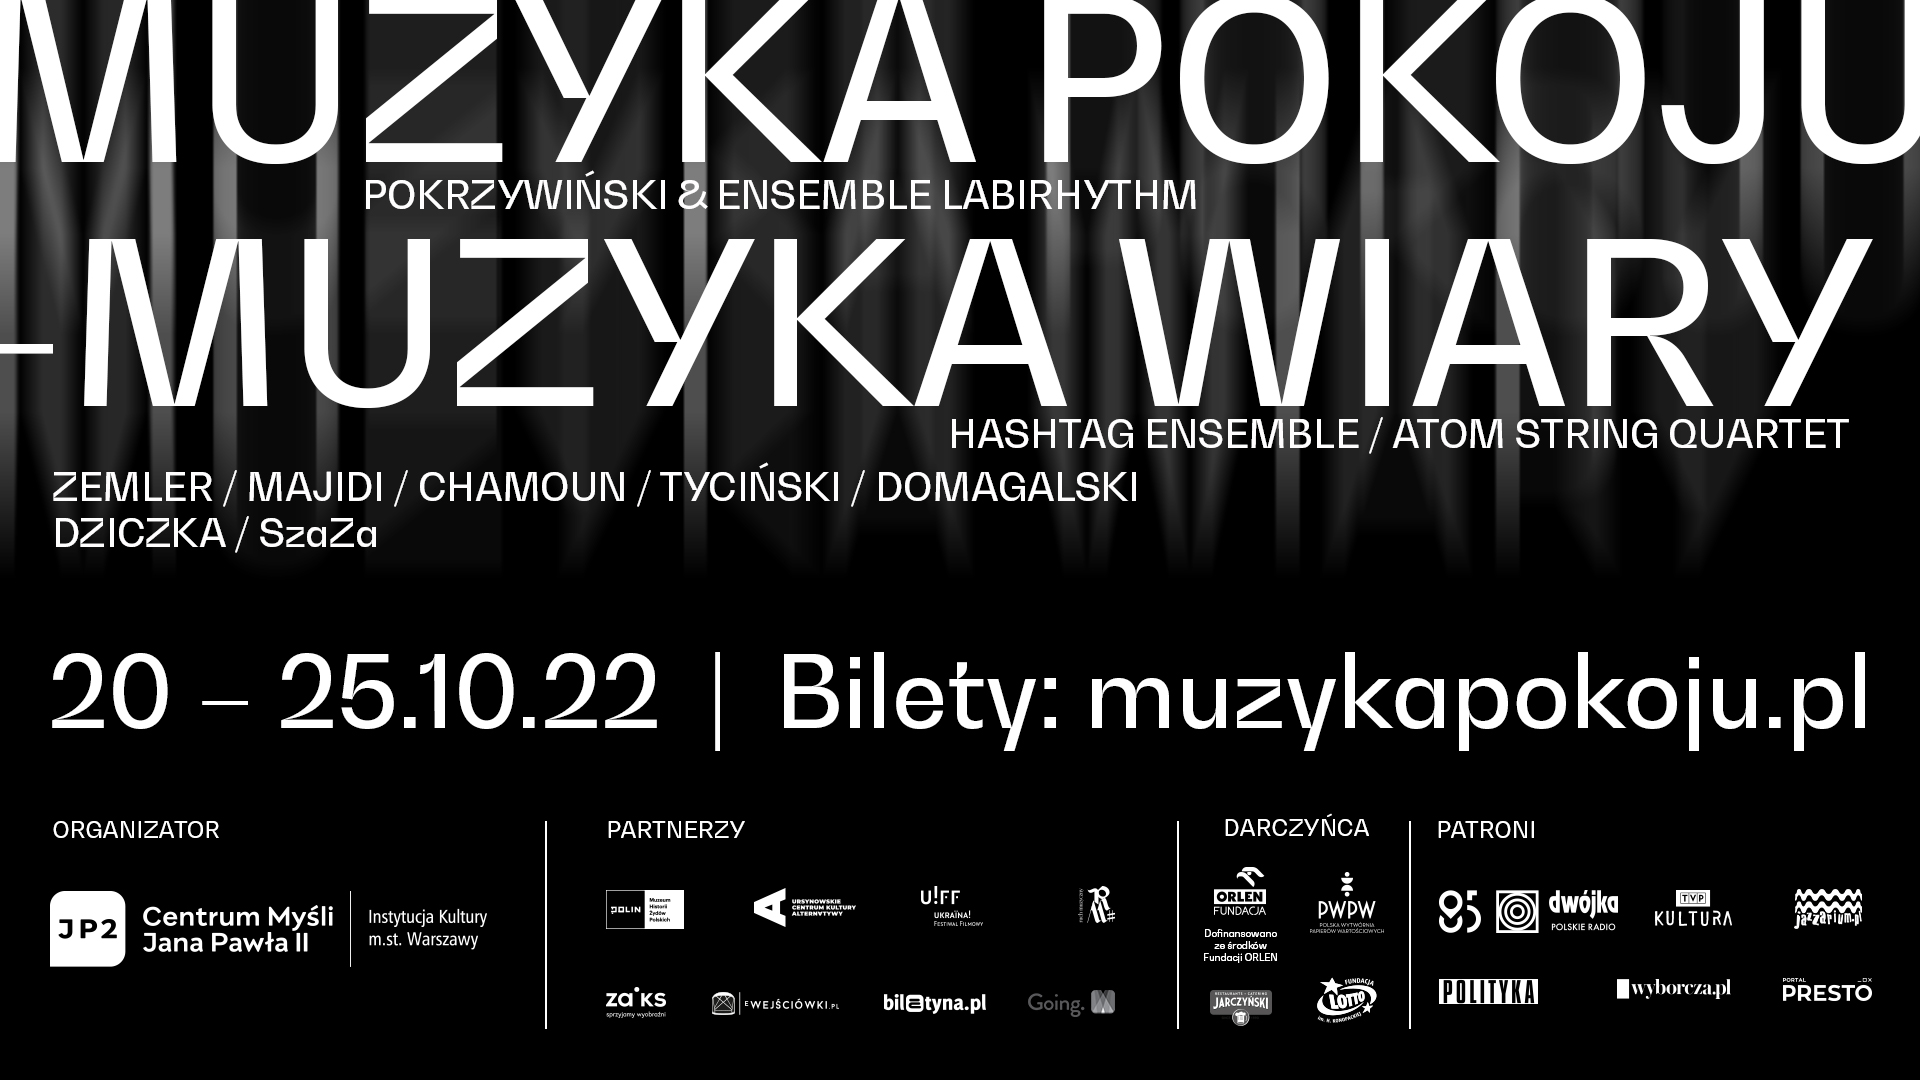 Na czarnym tle białe napisy: Muzyka Pokoju - Muzyka Wiary, 20-25.10.2022, bilety: muzykapokoju.pl, logotypy organizatorów i partnerów i nazwiska artystów biorących udział w festiwalu.